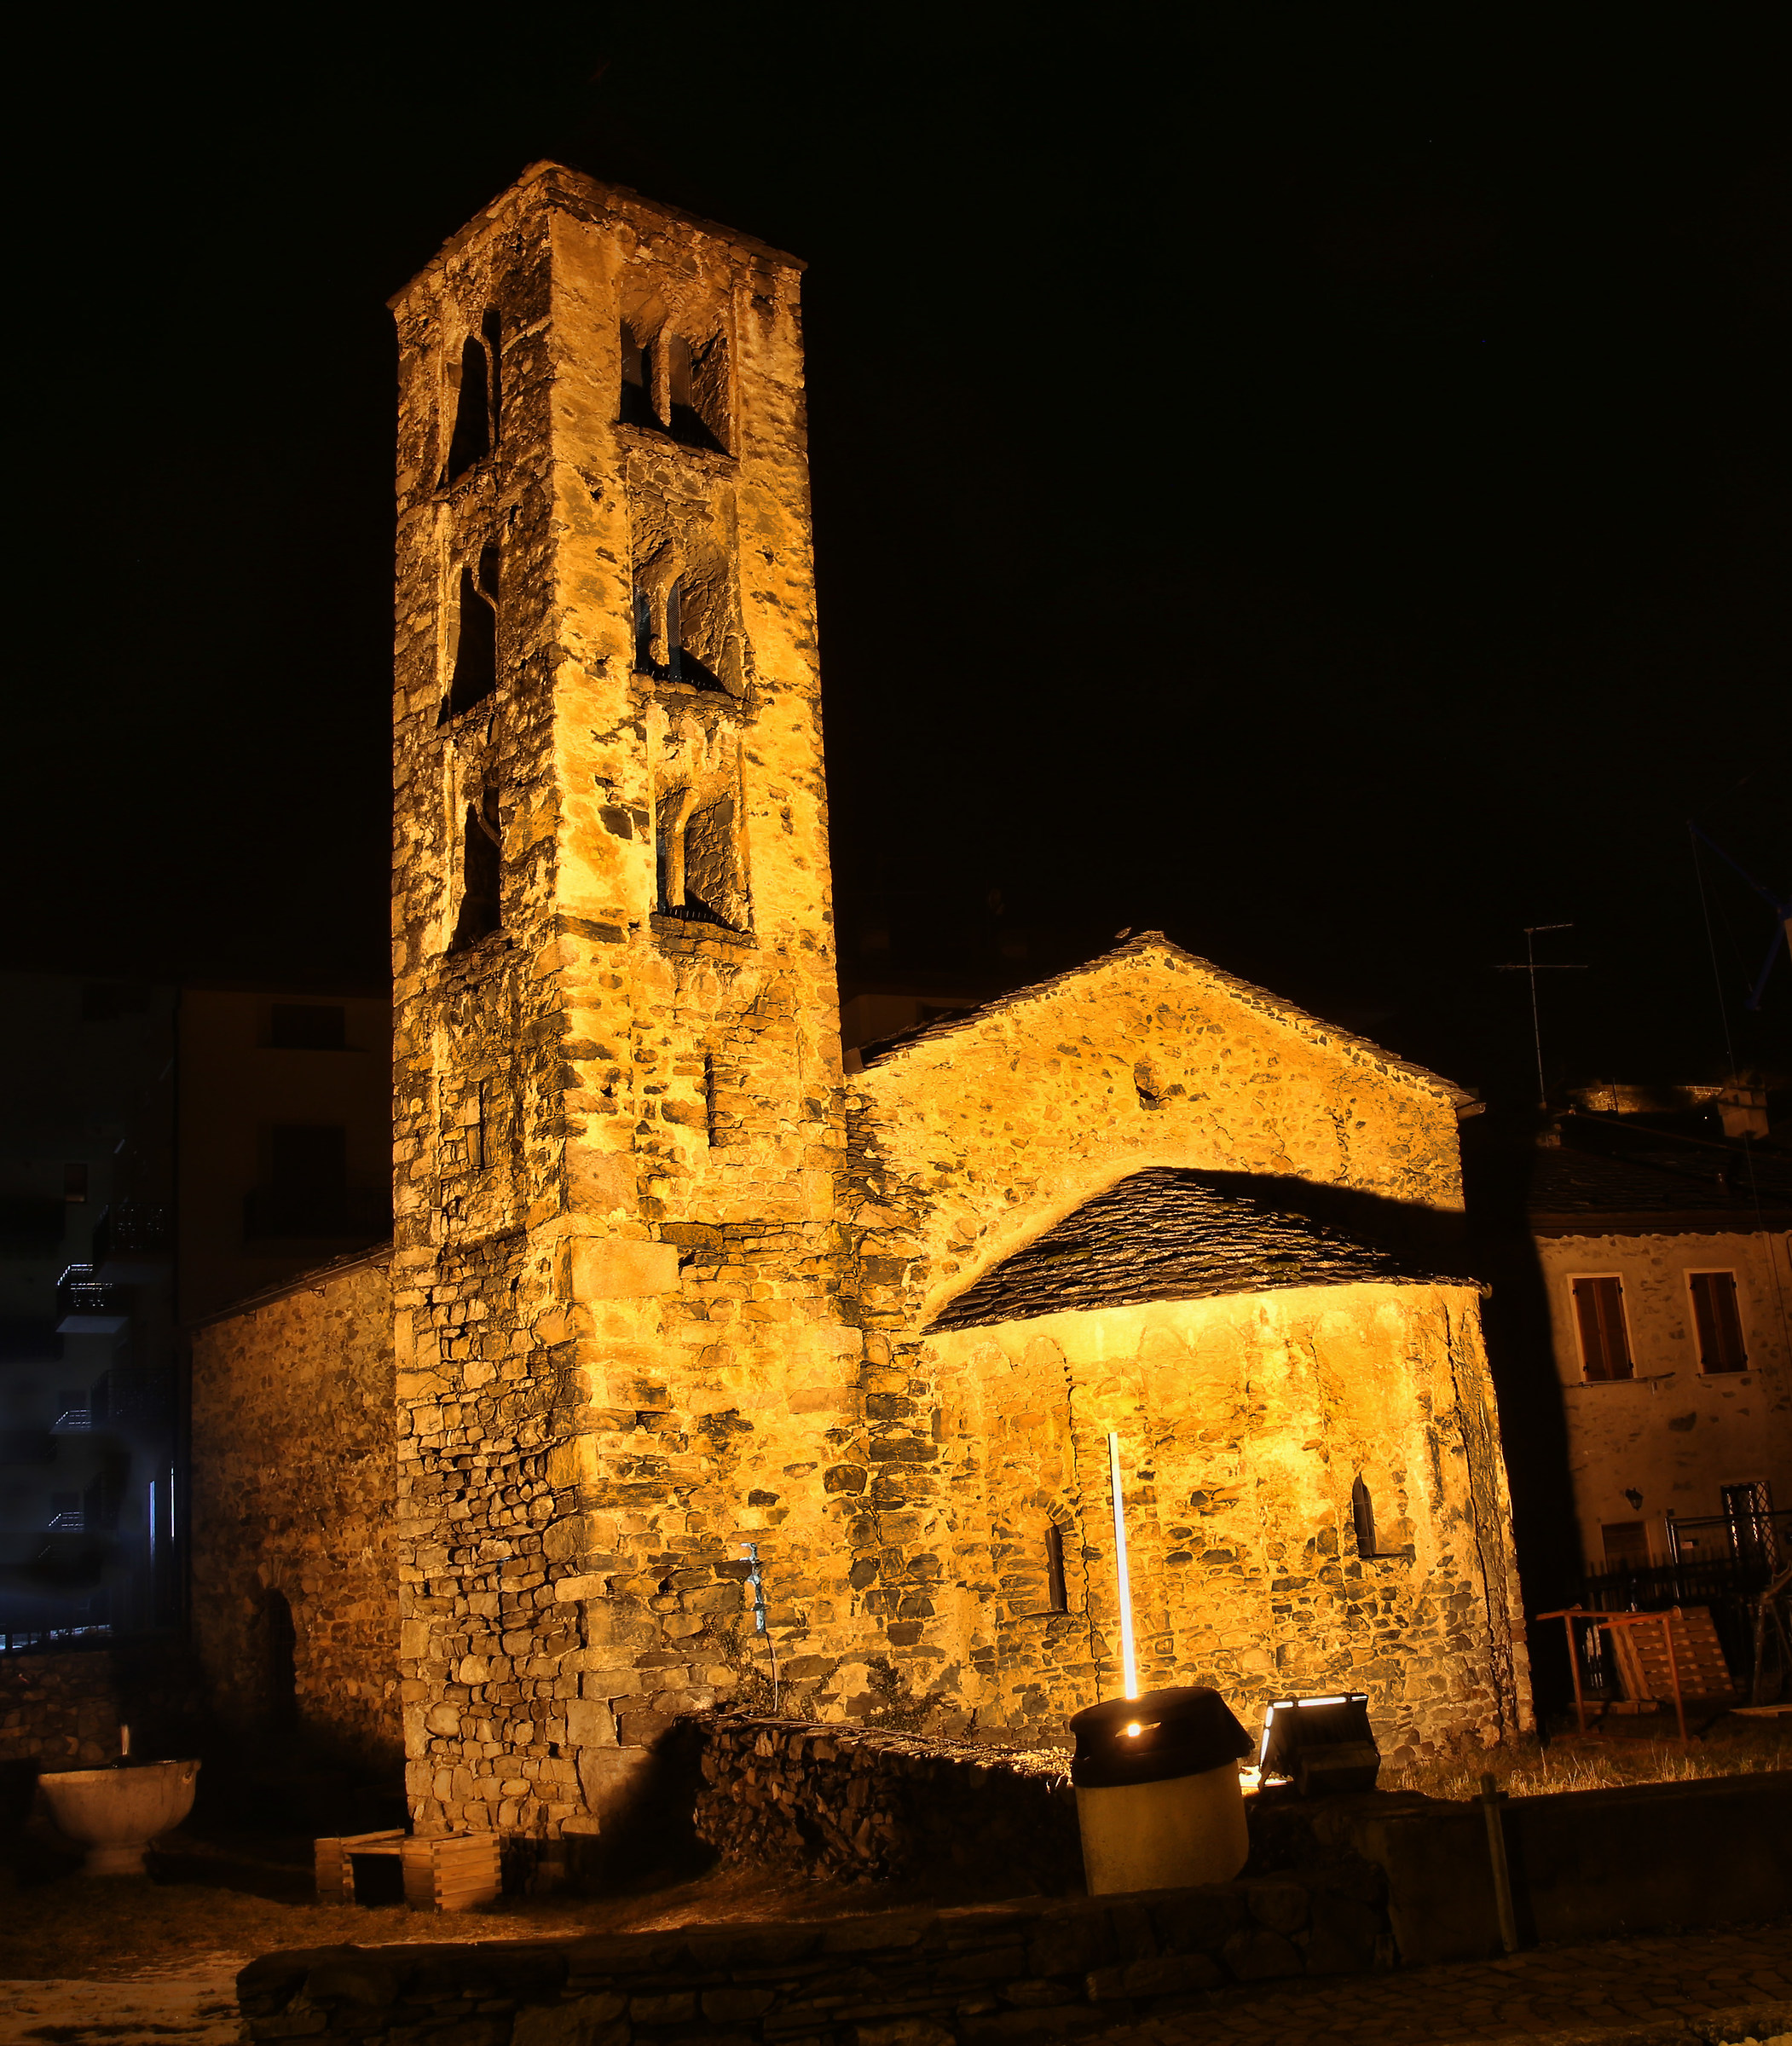 San Pitro church in Teglio...